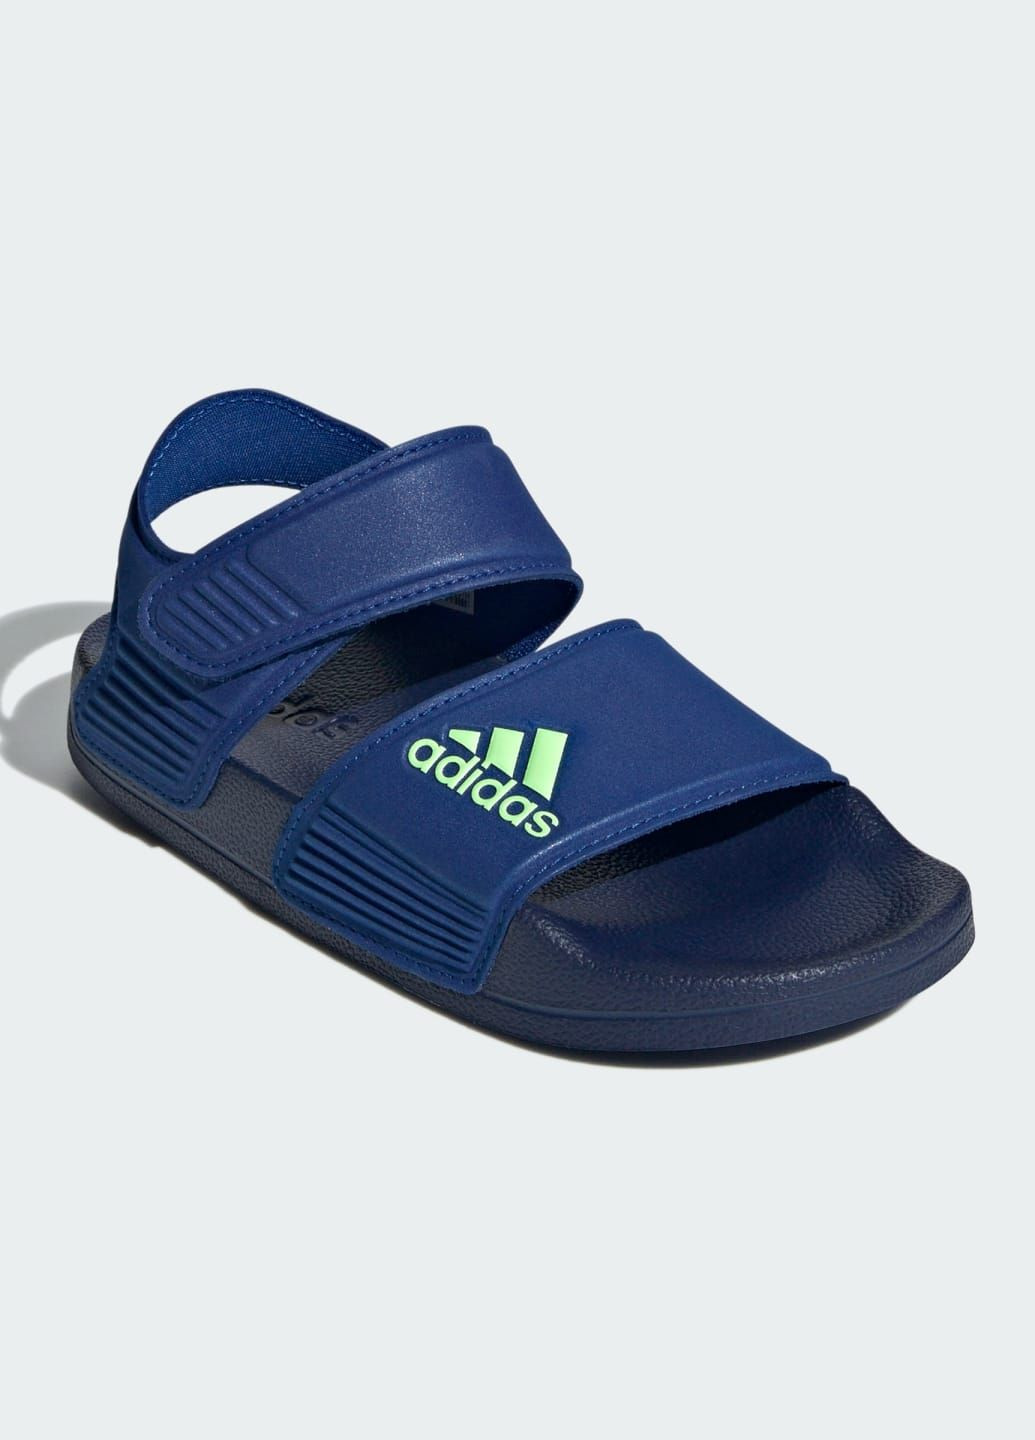 Синие спортивные сандалии adilette adidas